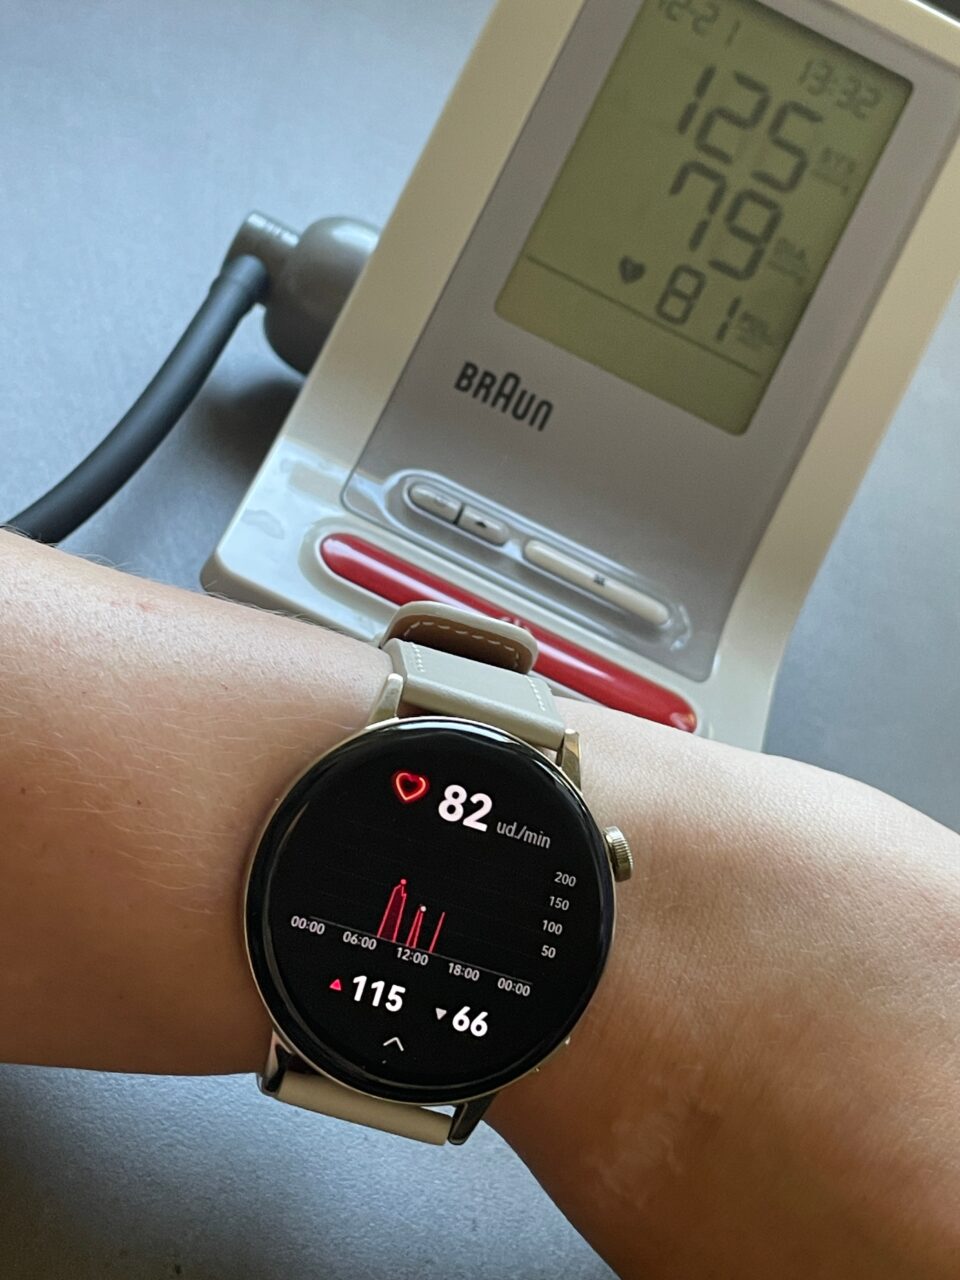 Osoba nosząca smartwatch mierzący puls, w tle ciśnieniomierz pokazujący wynik pomiaru ciśnienia krwi.